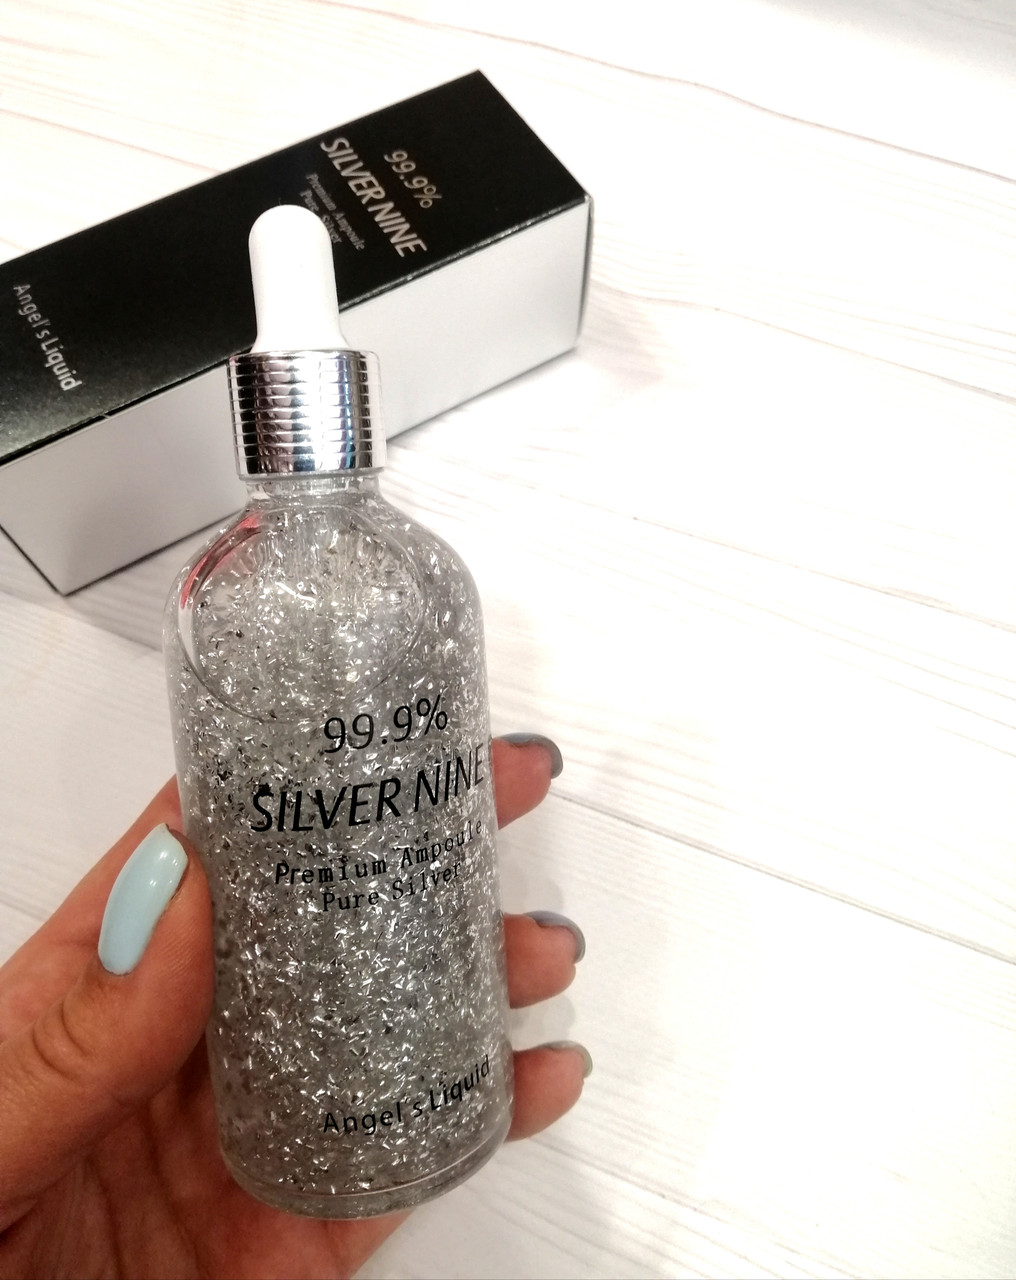 Сыворотка с чистым серебром 99.9% Silver Nine Ampoule Pure Silver Premium